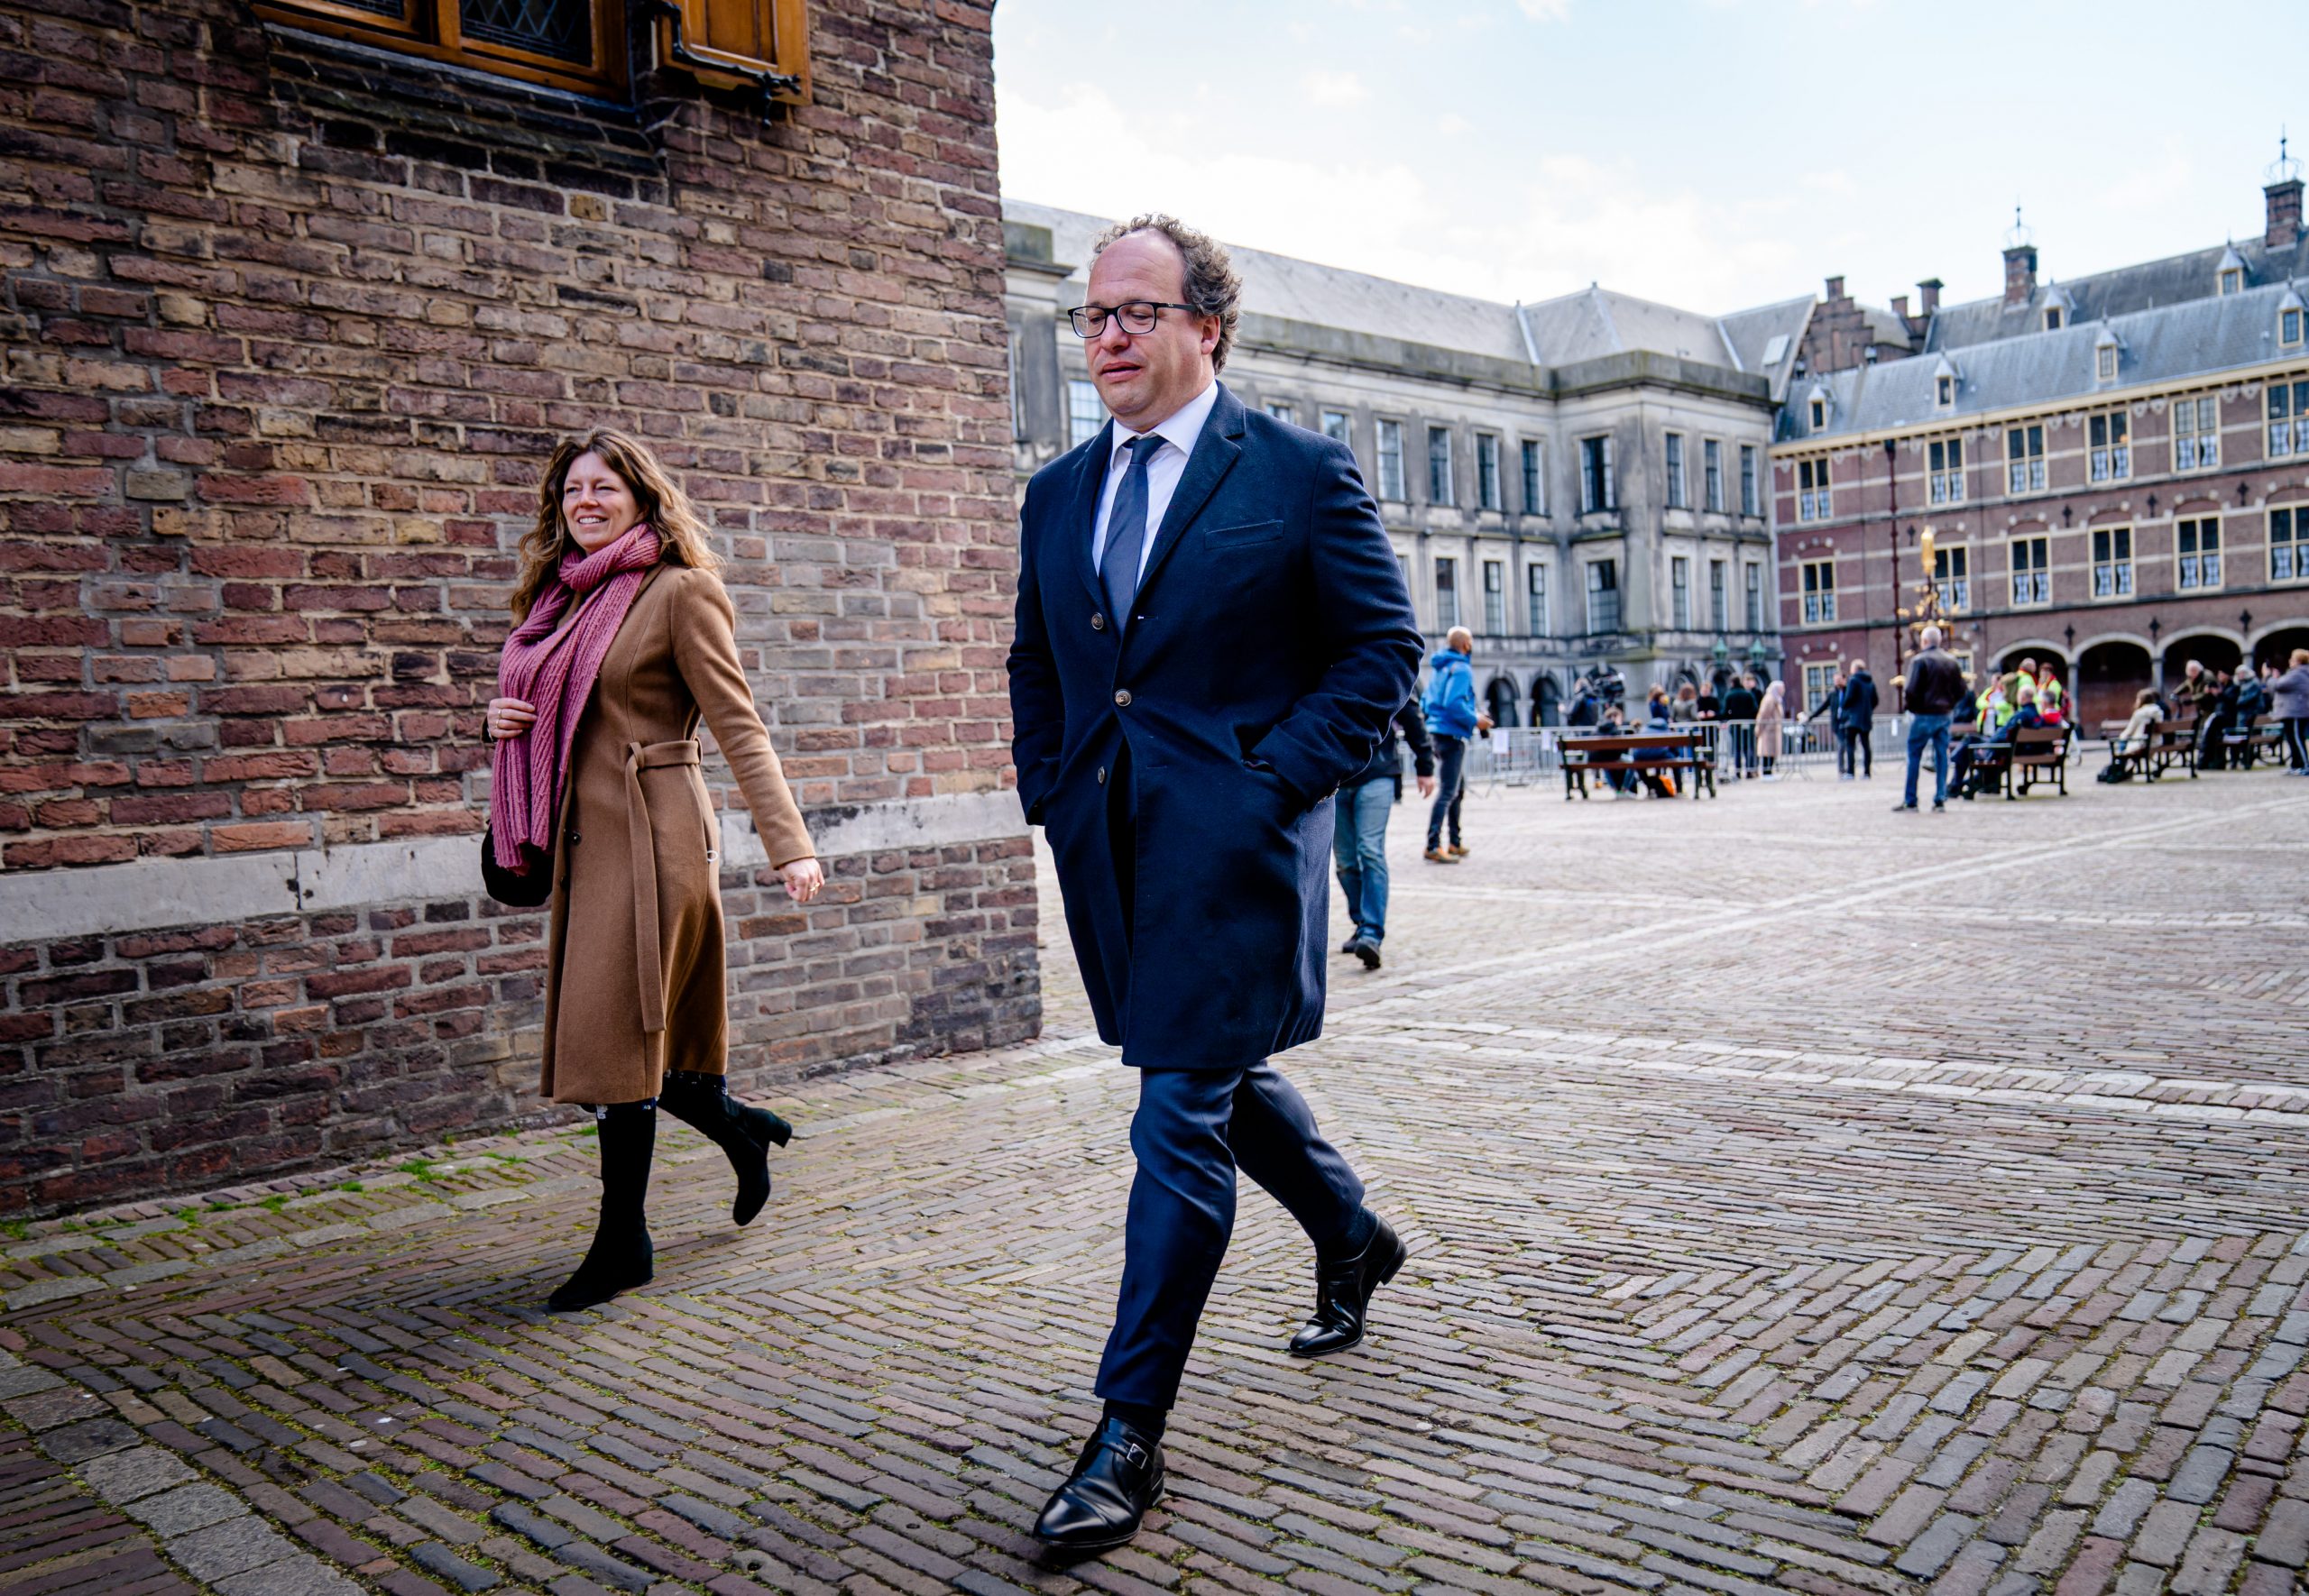 Minister van Sociale Zaken en Werkgelegenheid Wouter Koolmees (D66) op 15 april 2021 op het Binnenhof.